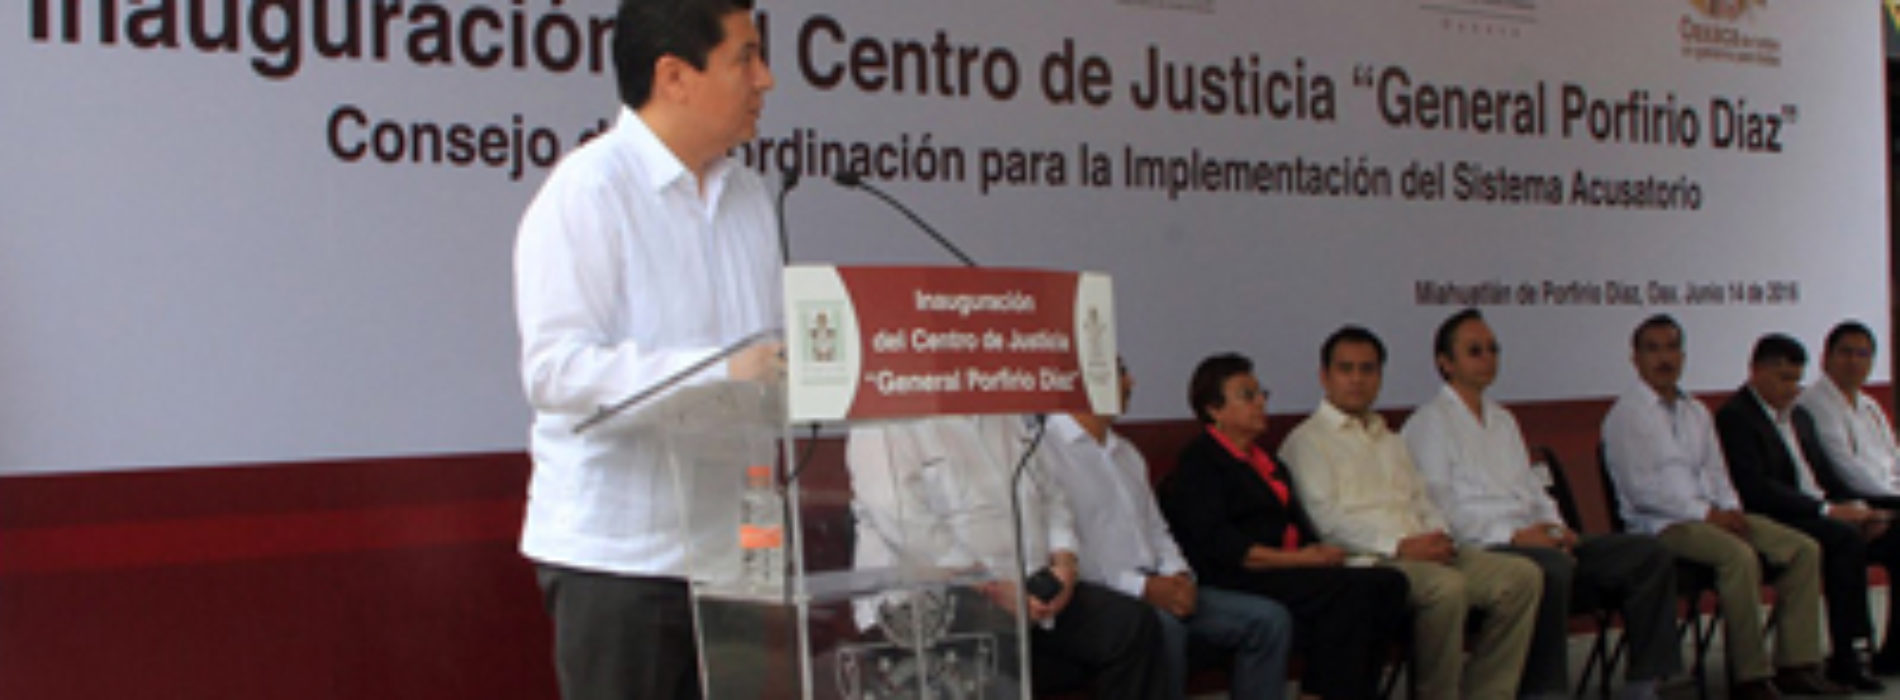 Inauguran Centro de Justicia “General Porfirio Díaz”, en Miahuatlán